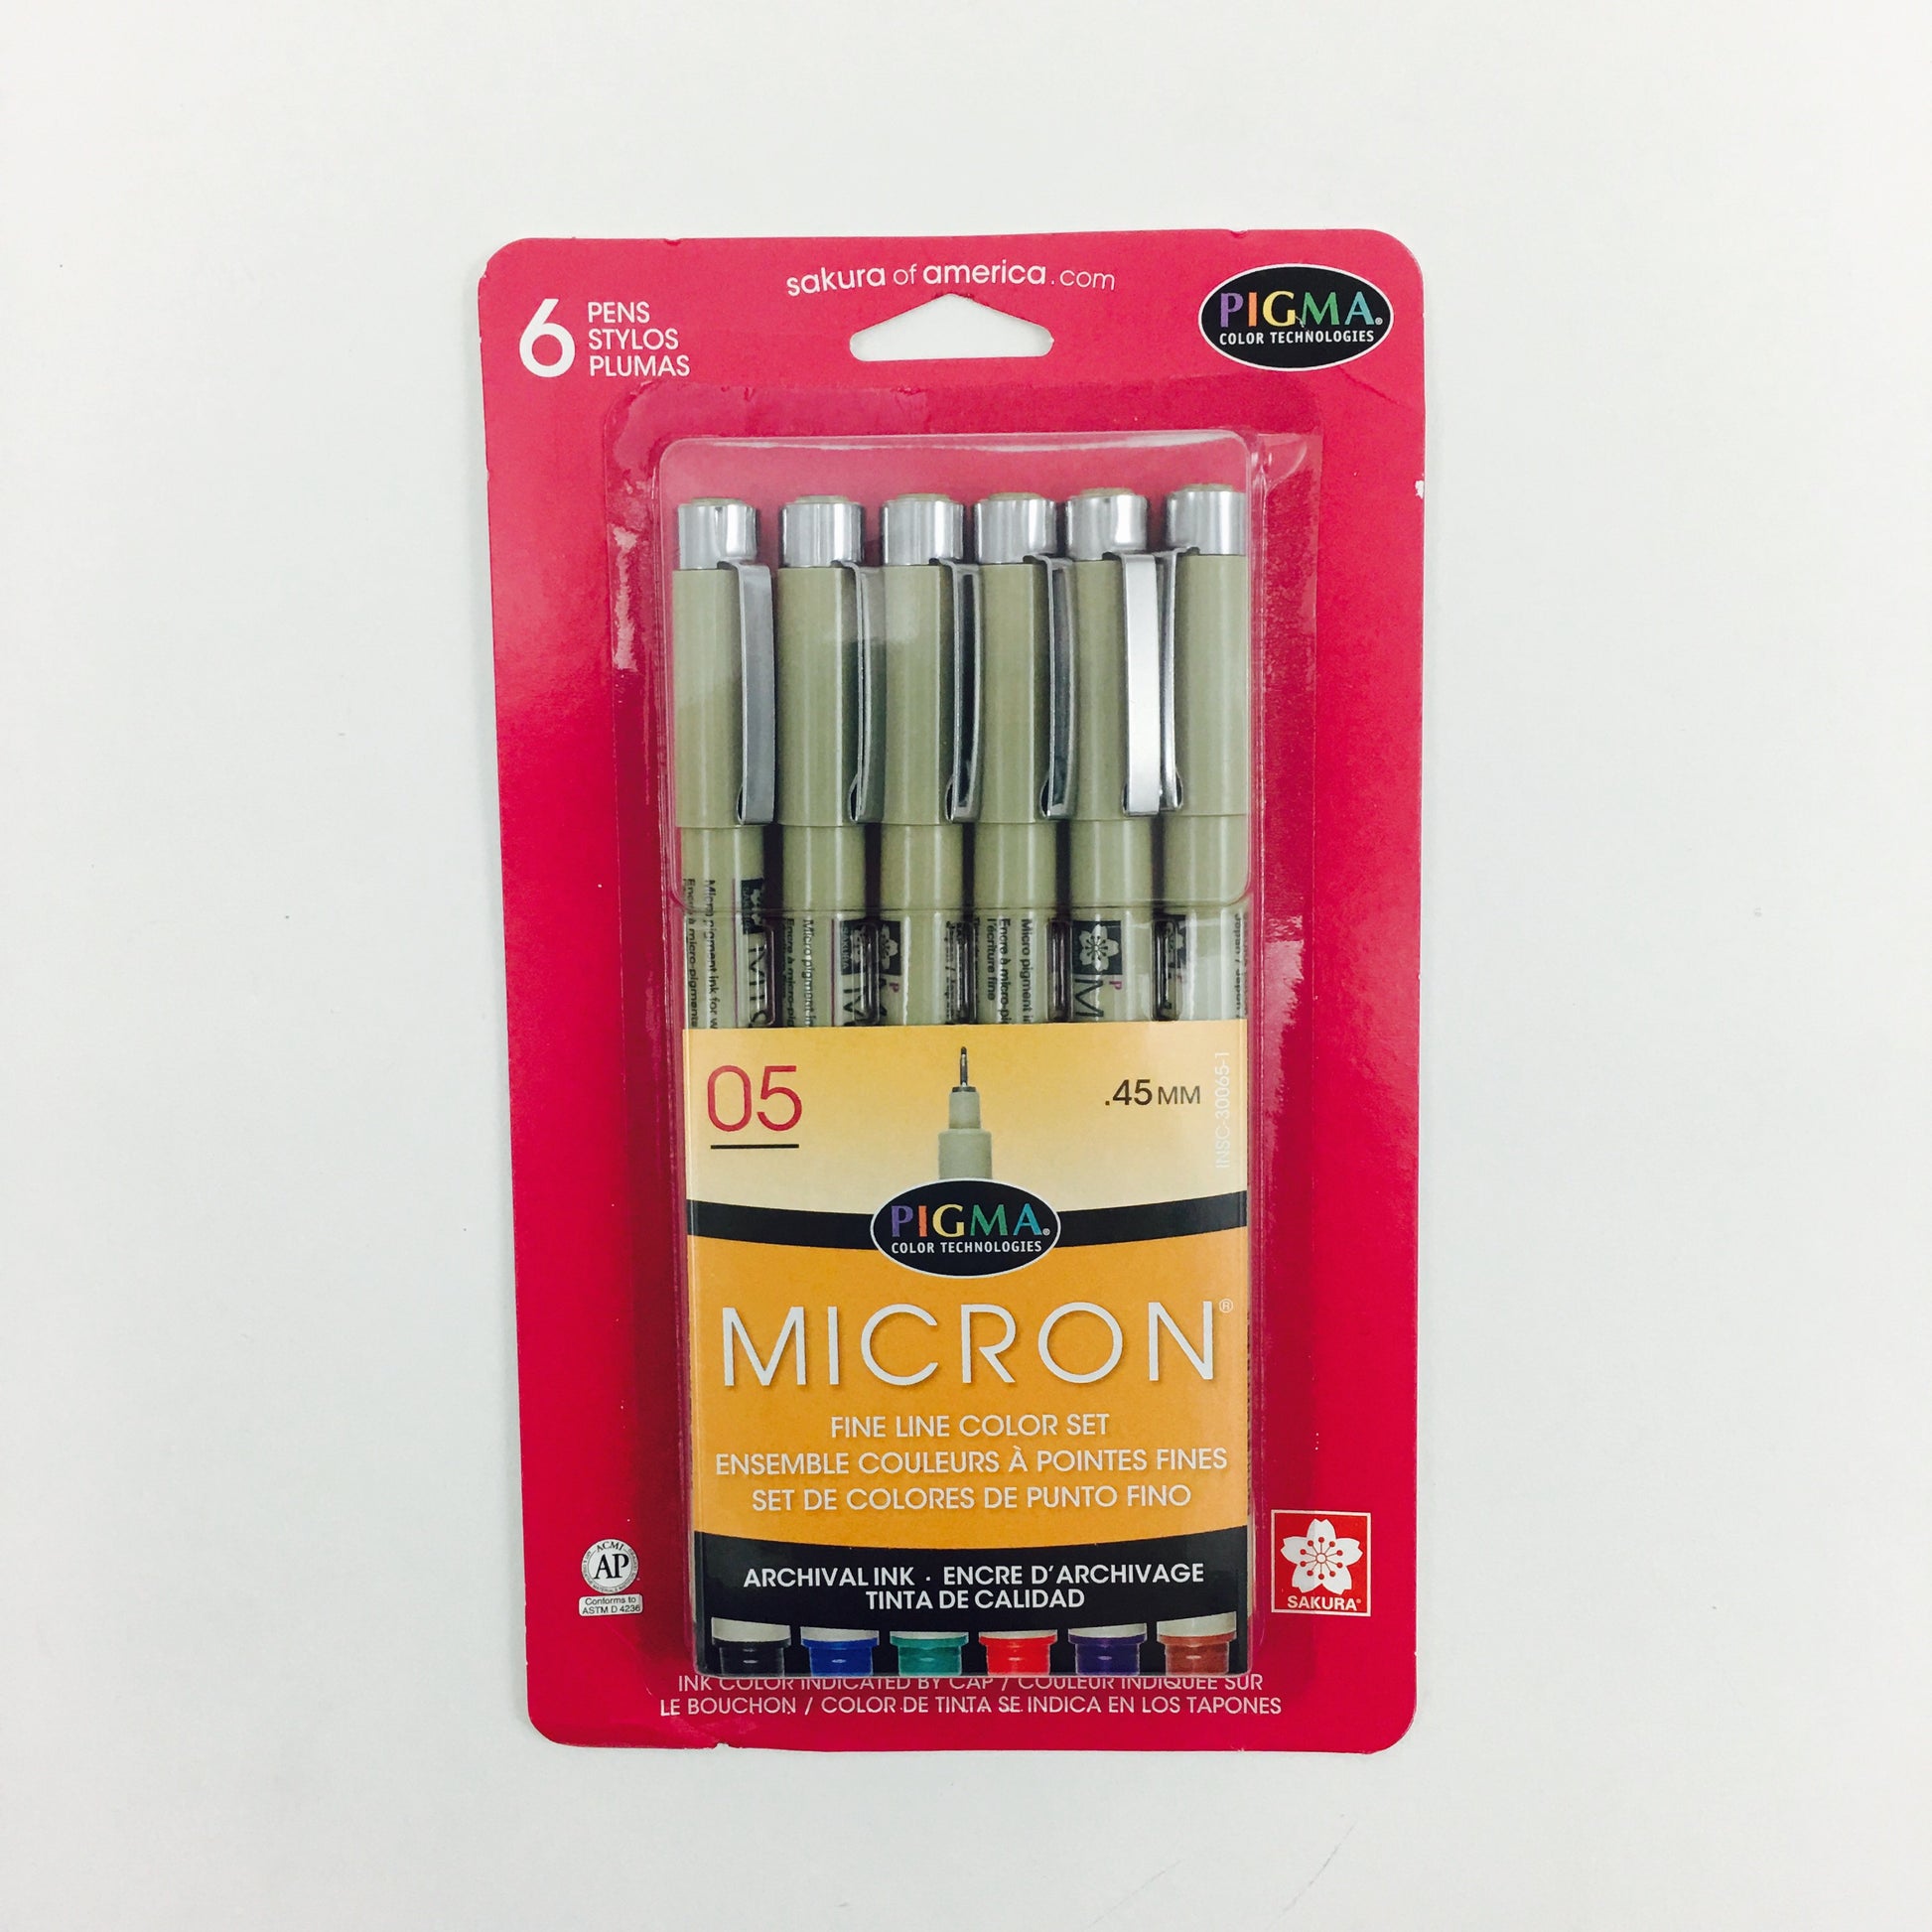 Pigma Micron Pen Sets - Colors - Size 05 Assorted Colors - 6/pack by Sakura - K. A. Artist Shop